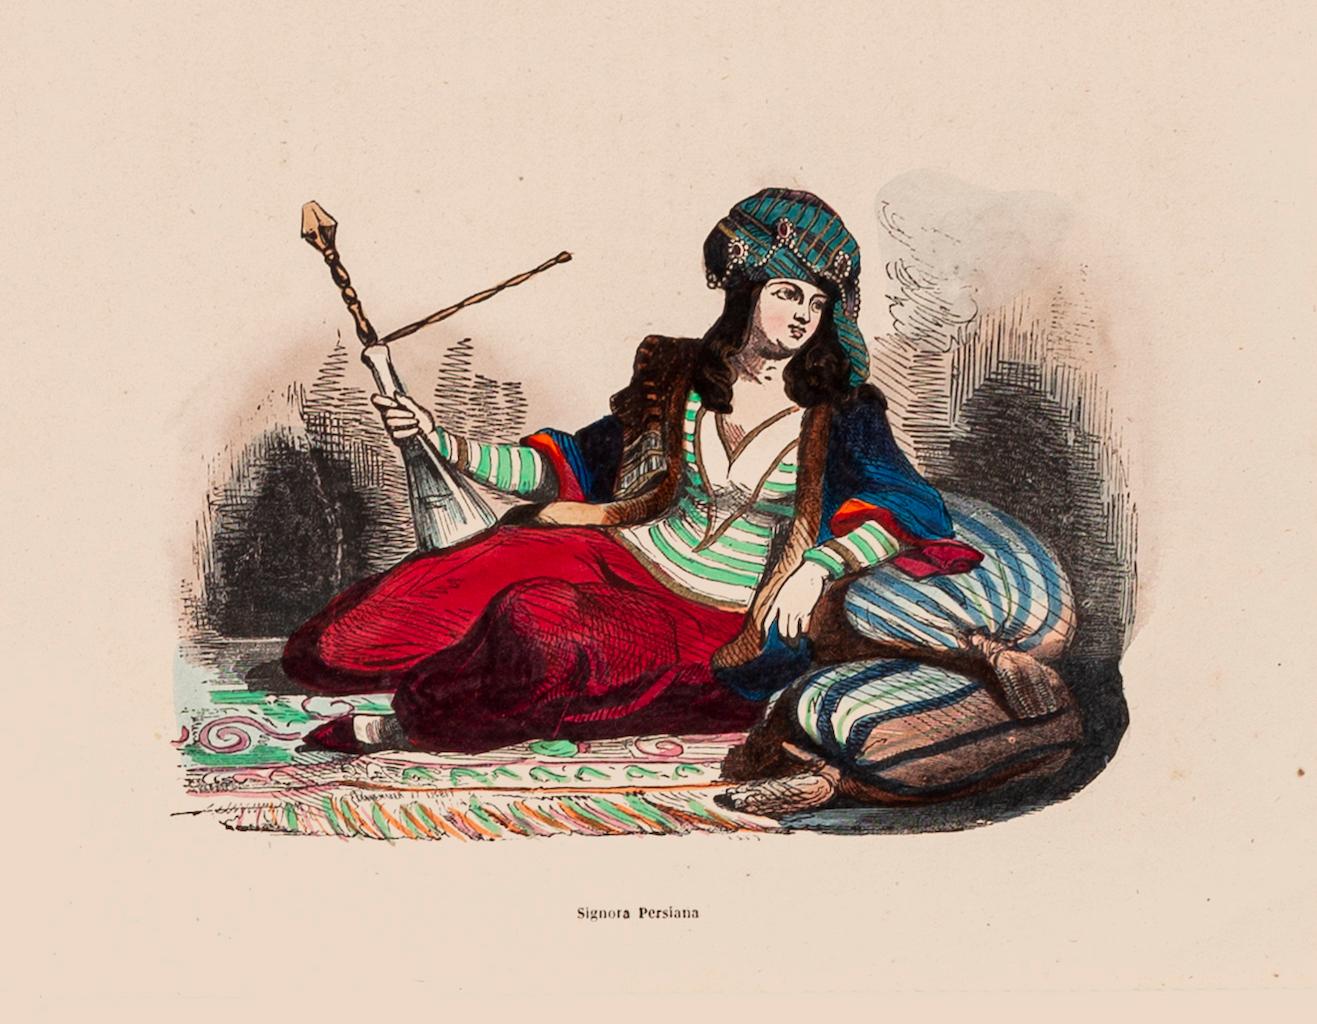 Unknown Figurative Print - Persian Woman - Original Lithograph - 1848 ca.